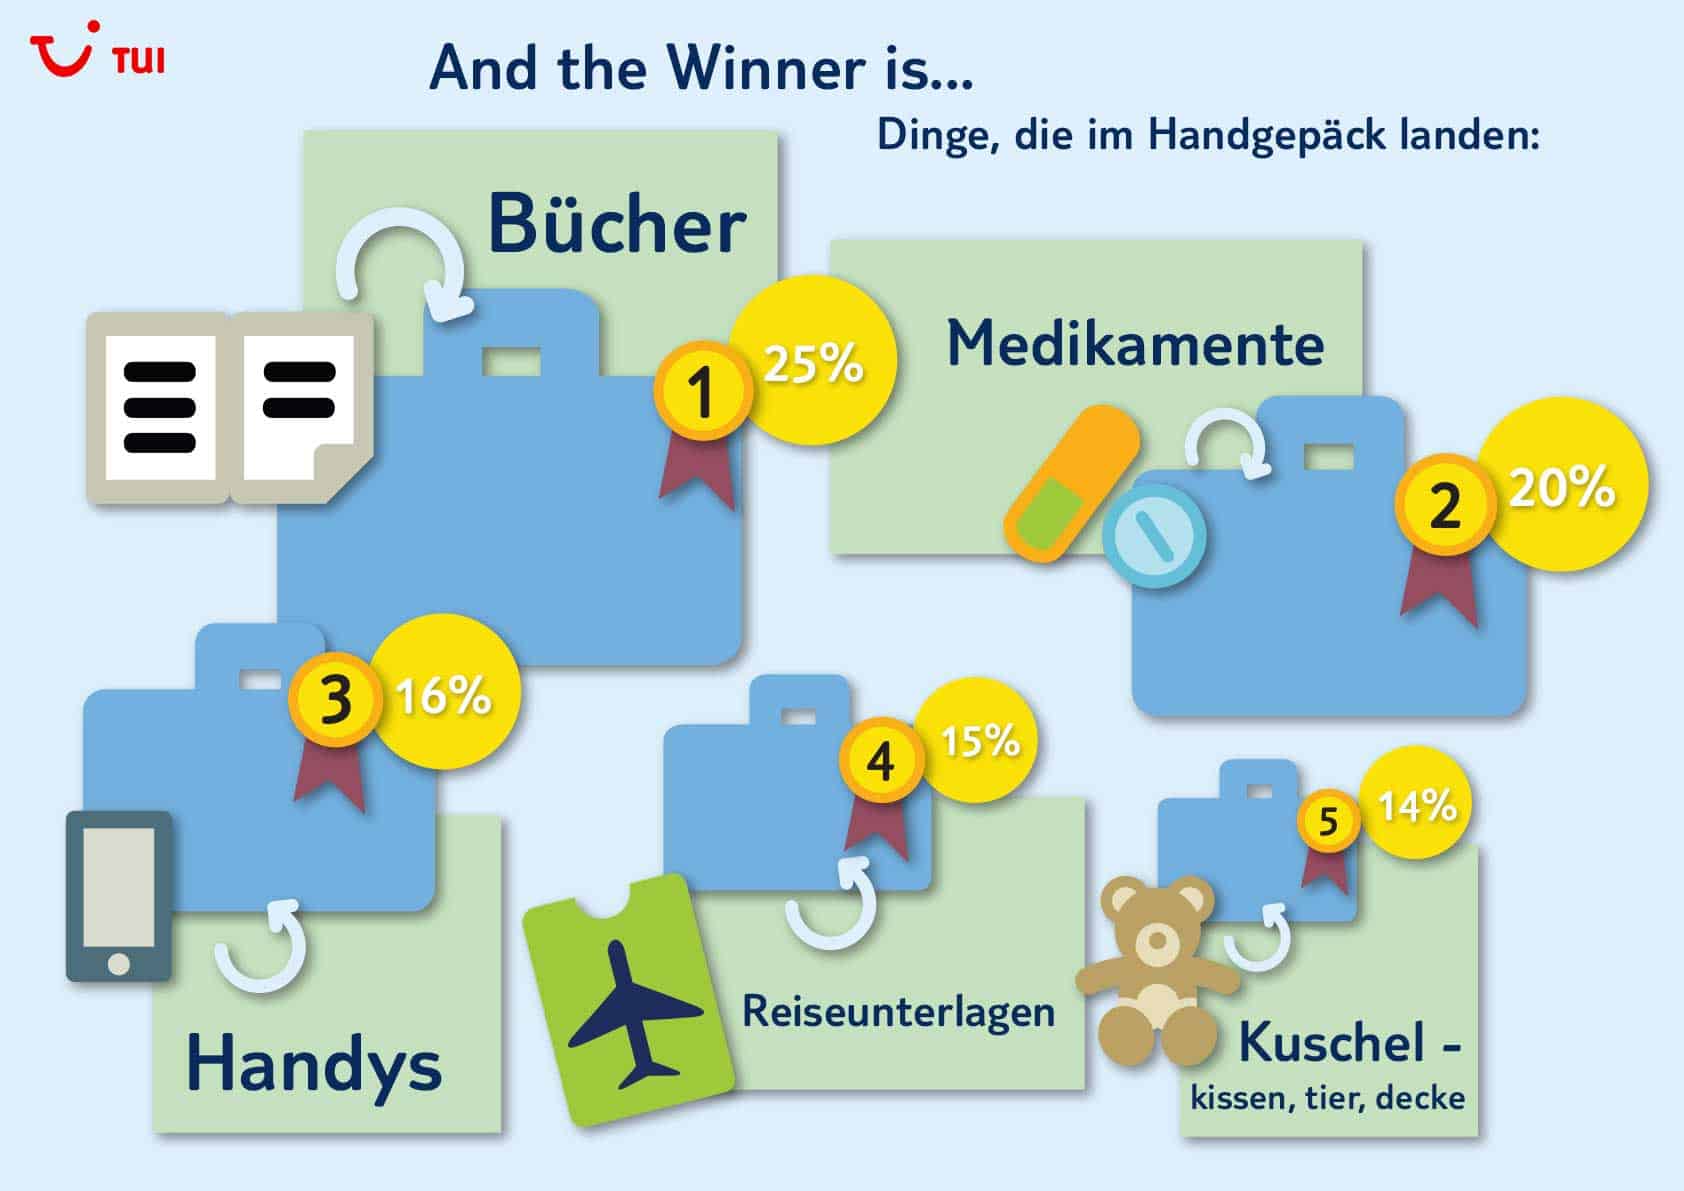 Infografik: Auswertung aus dem TUI Blog Handgepäck-Gewinnspiel (PDF)